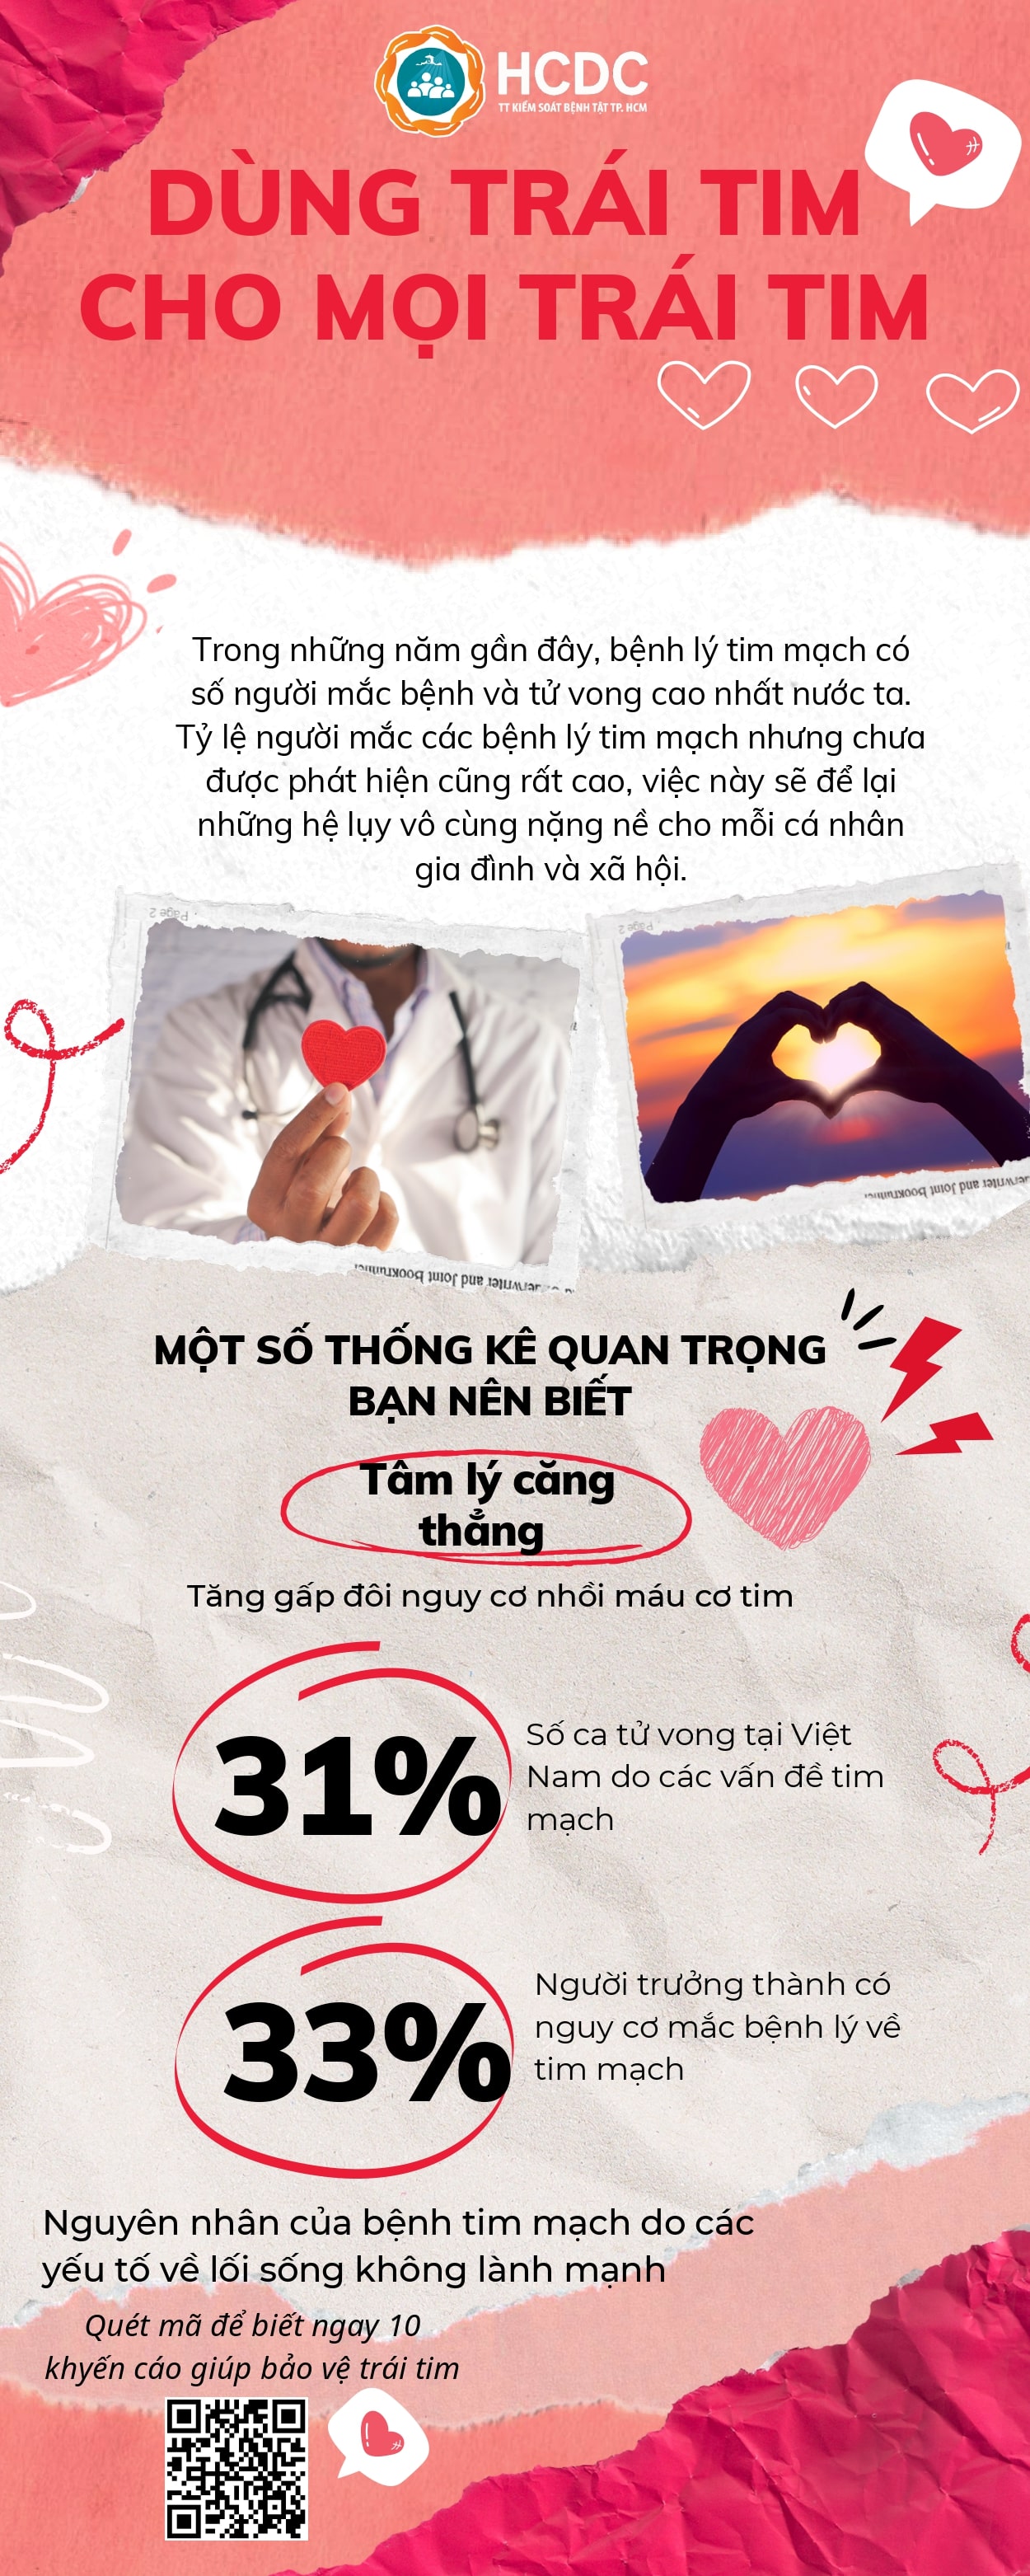 Infographic "Ngày tim mạch Thế giới"